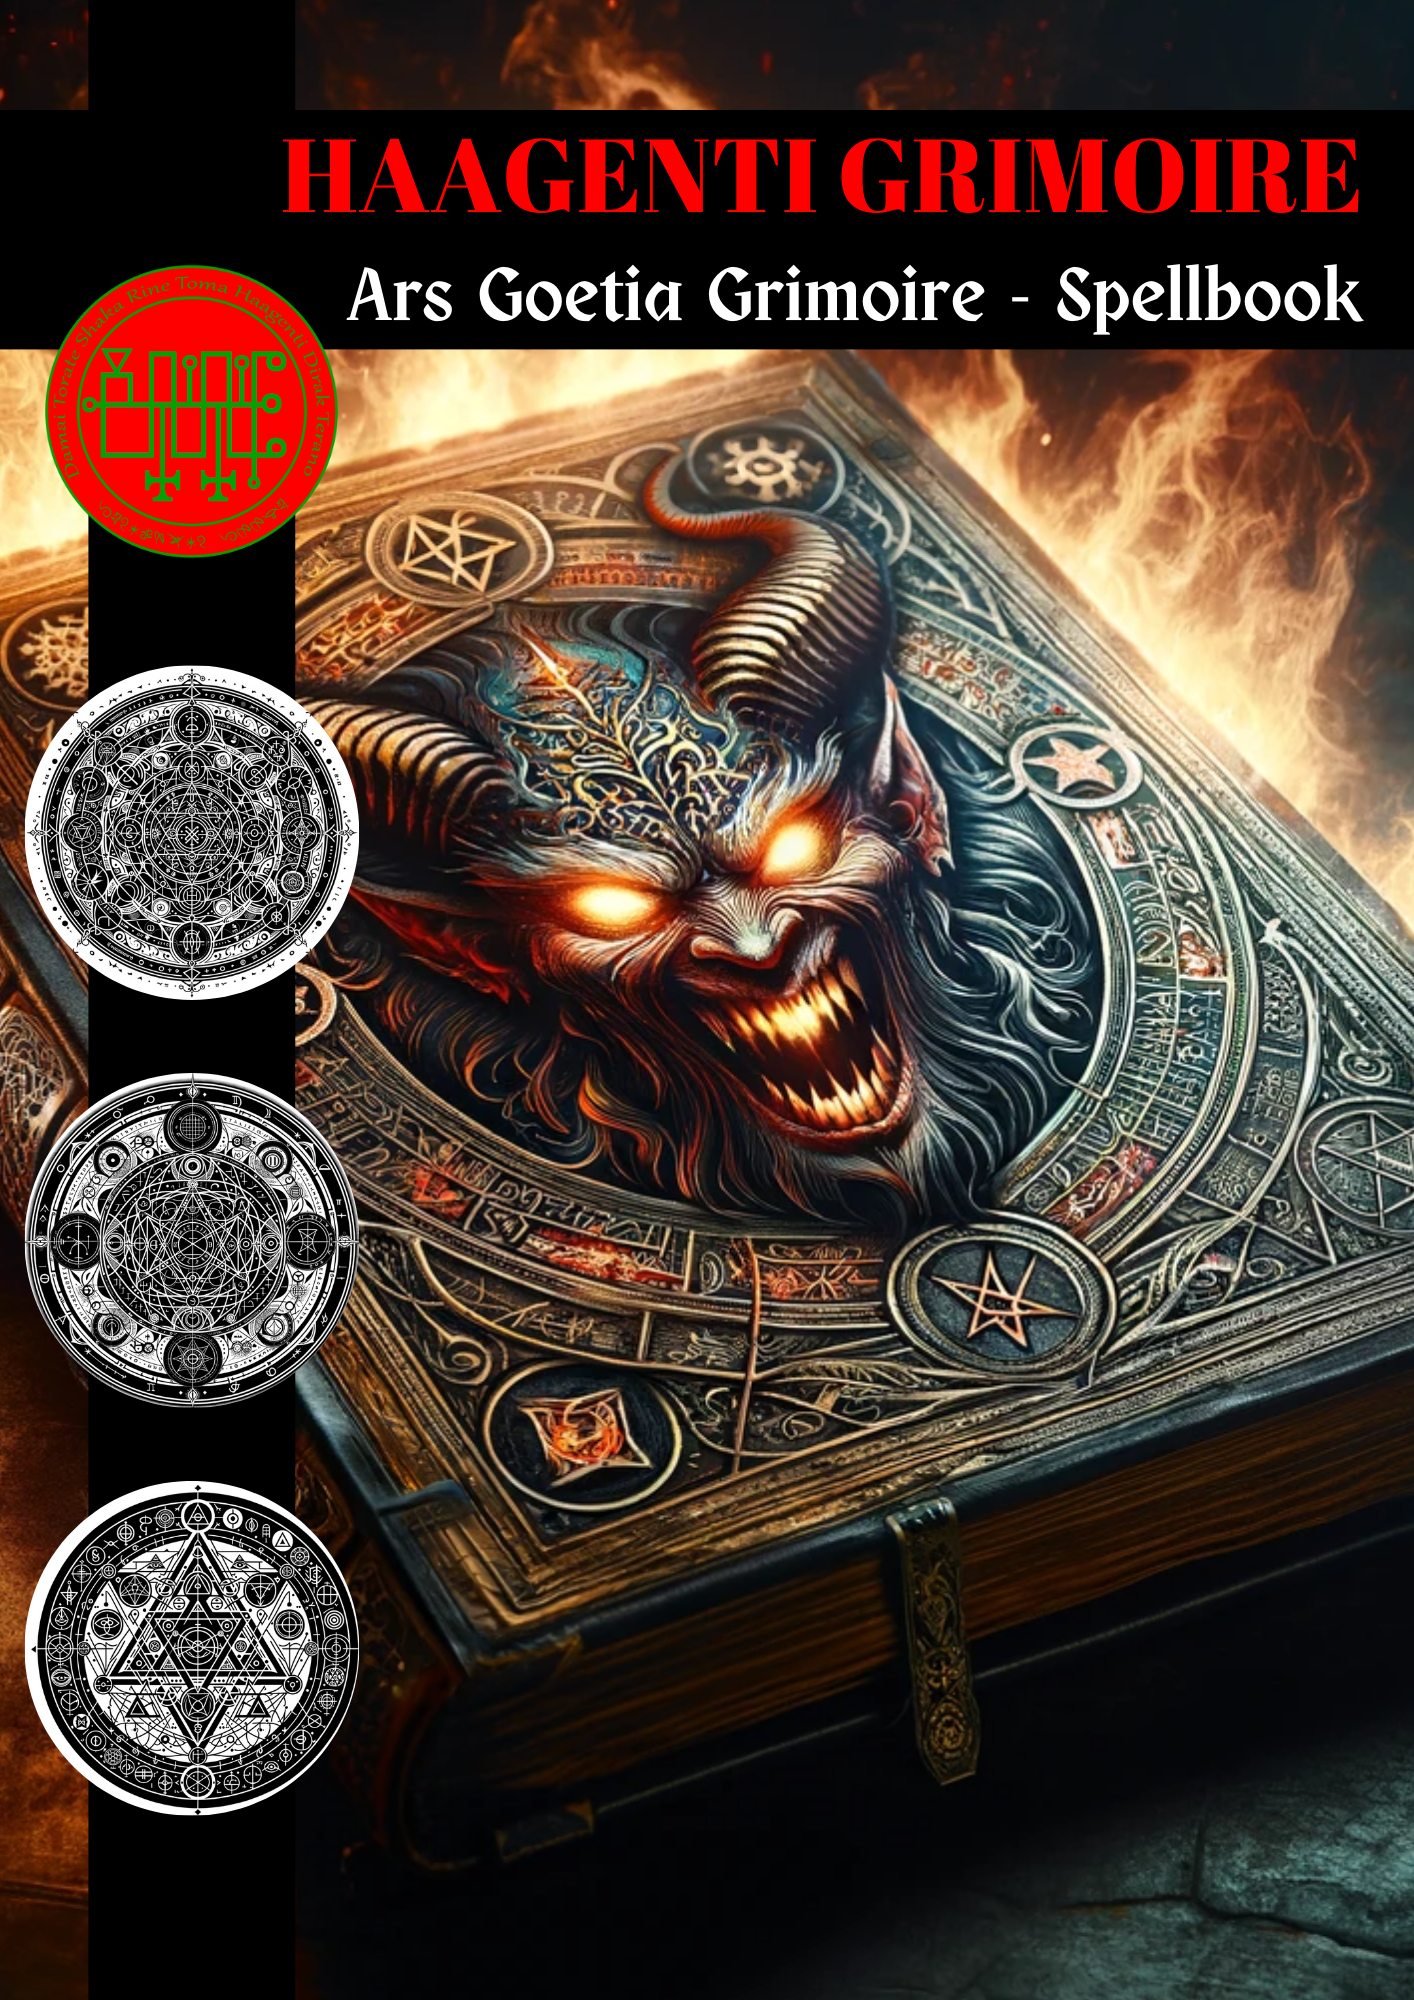 Grimoire of Haagenti Spells & Rituals untuk mengubah situasi negatif menjadi positif - Abraxas Amulets ® Magic ♾️ Talismans ♾️ Initiations